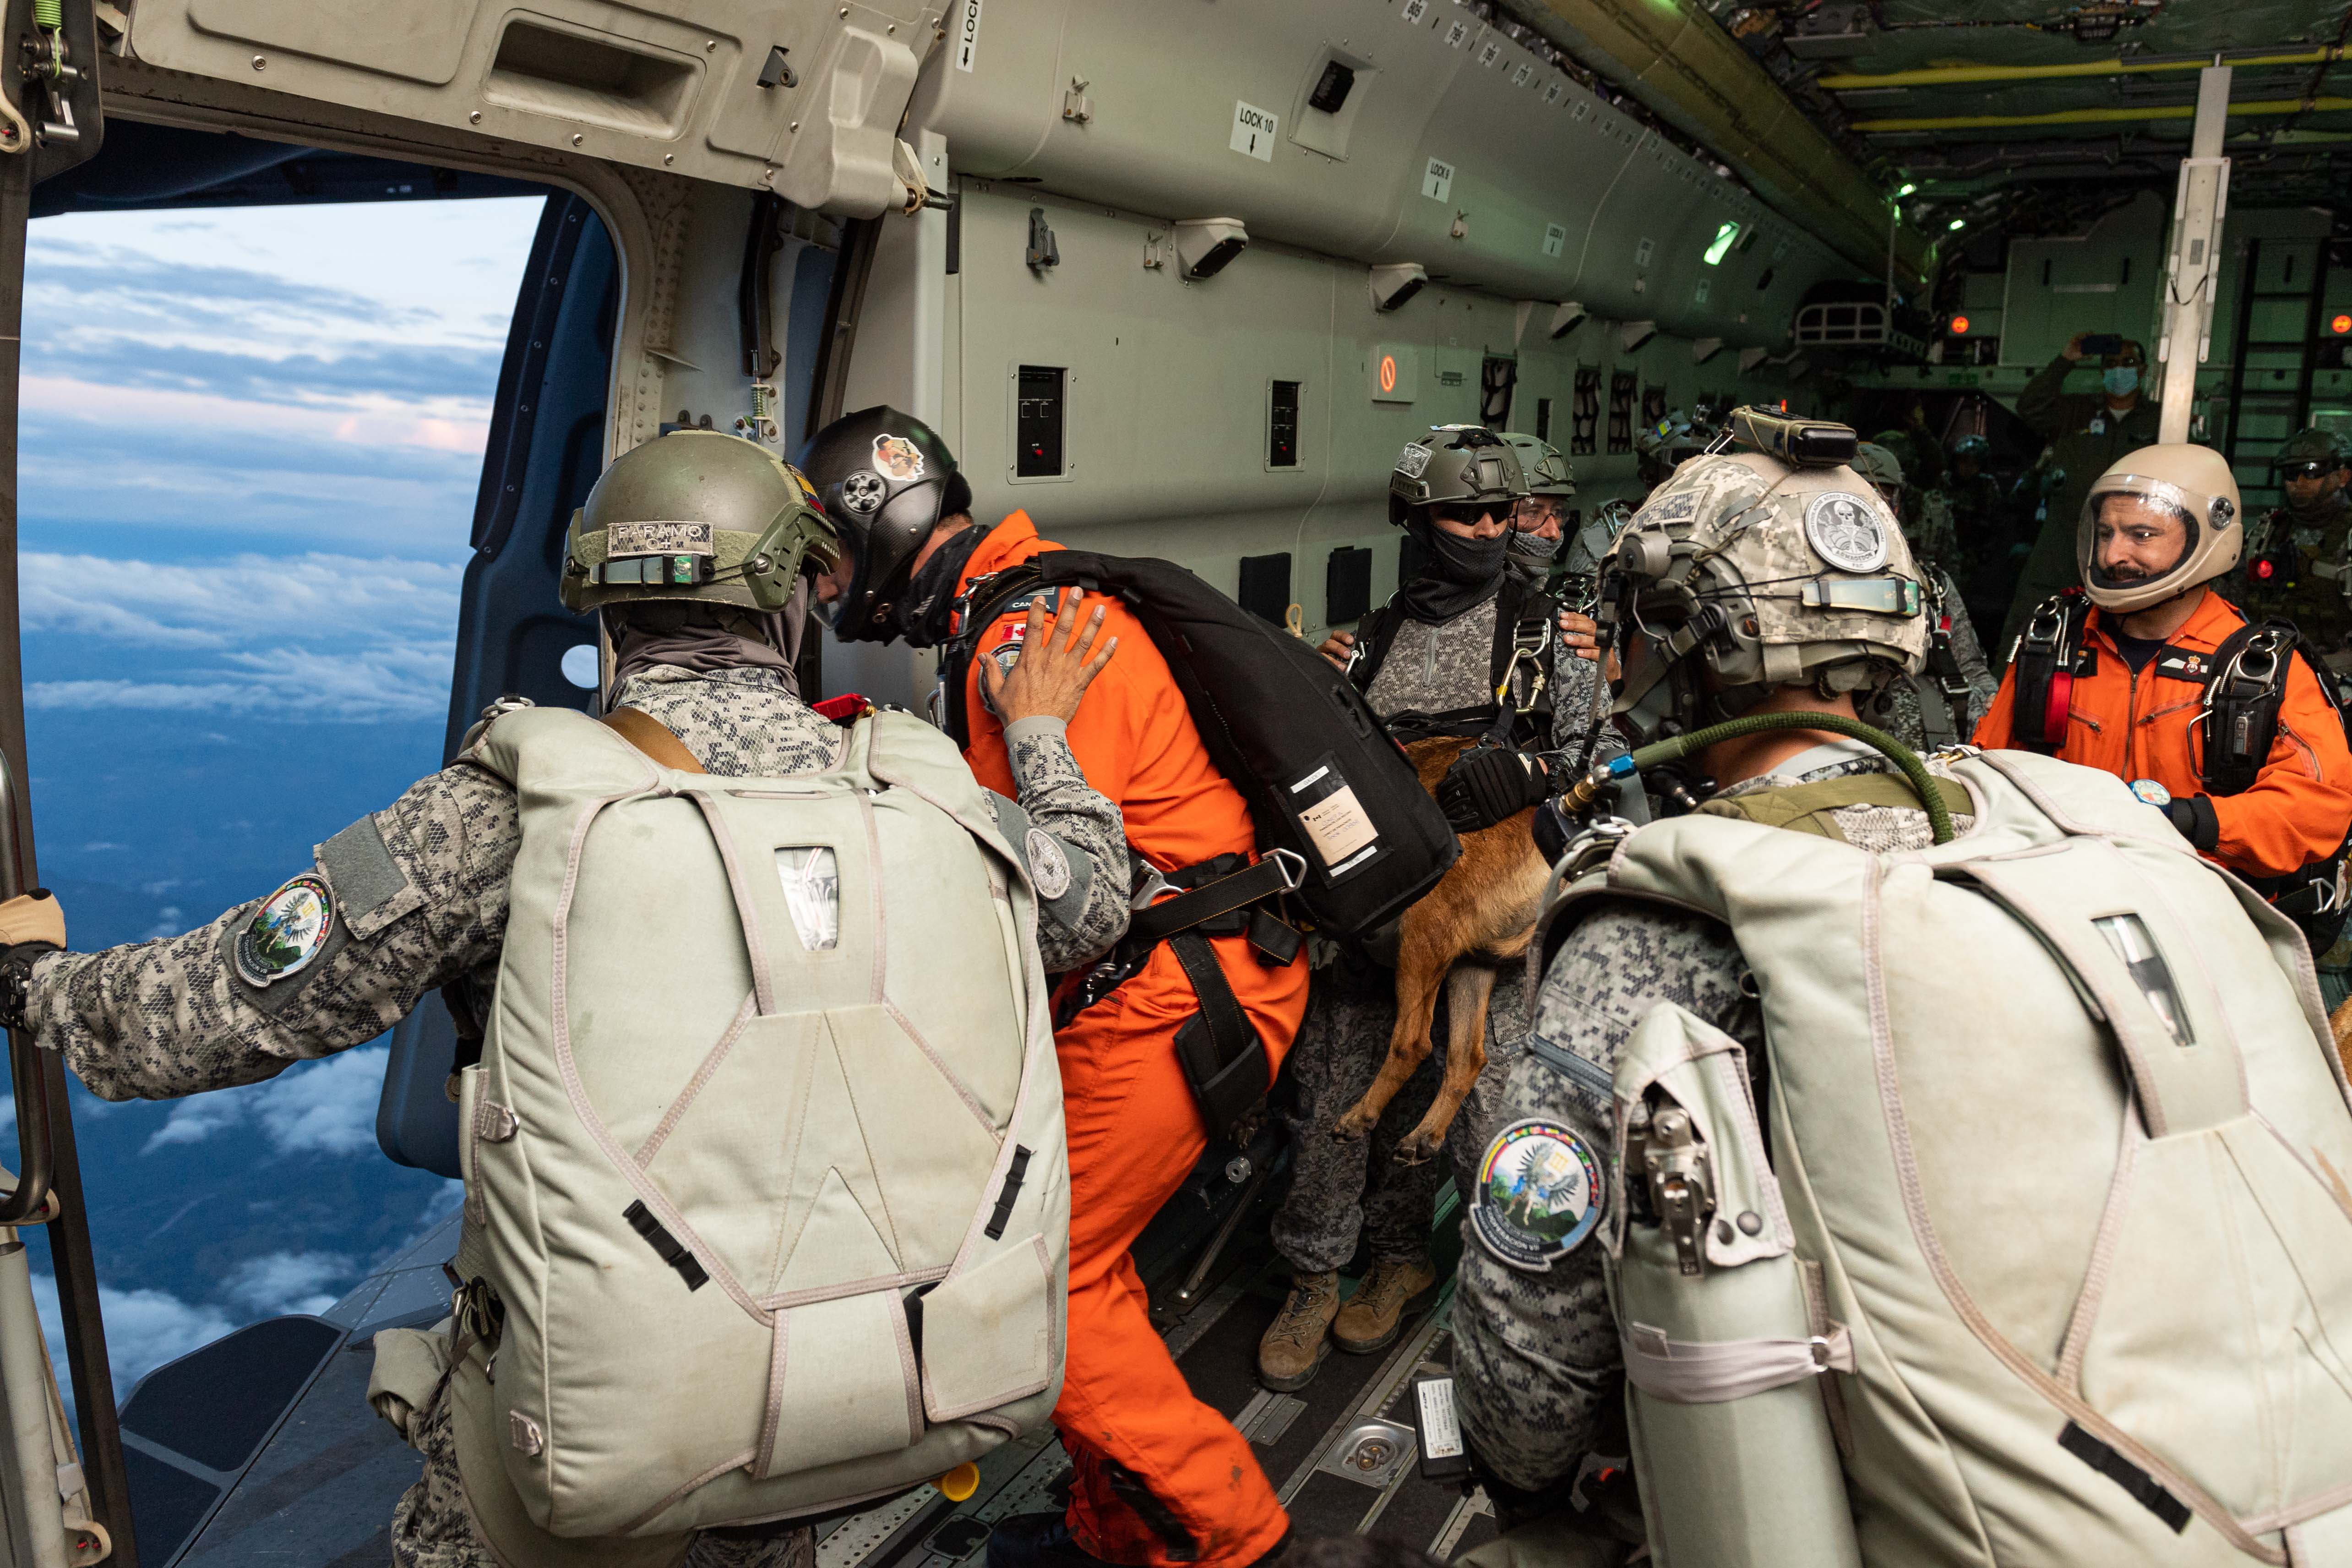 Les membres des équipes de recherche et sauvetage de l’Aviation royale canadienne et de la Force aérienne colombienne font un saut en chute libre au-dessus de la base aérienne colombienne de Palanquero lors de l’exercice COOPERACION VII en Colombie le 31 aout 2021. PHOTO : Caporal Dominic Duchesne-Beaulieu